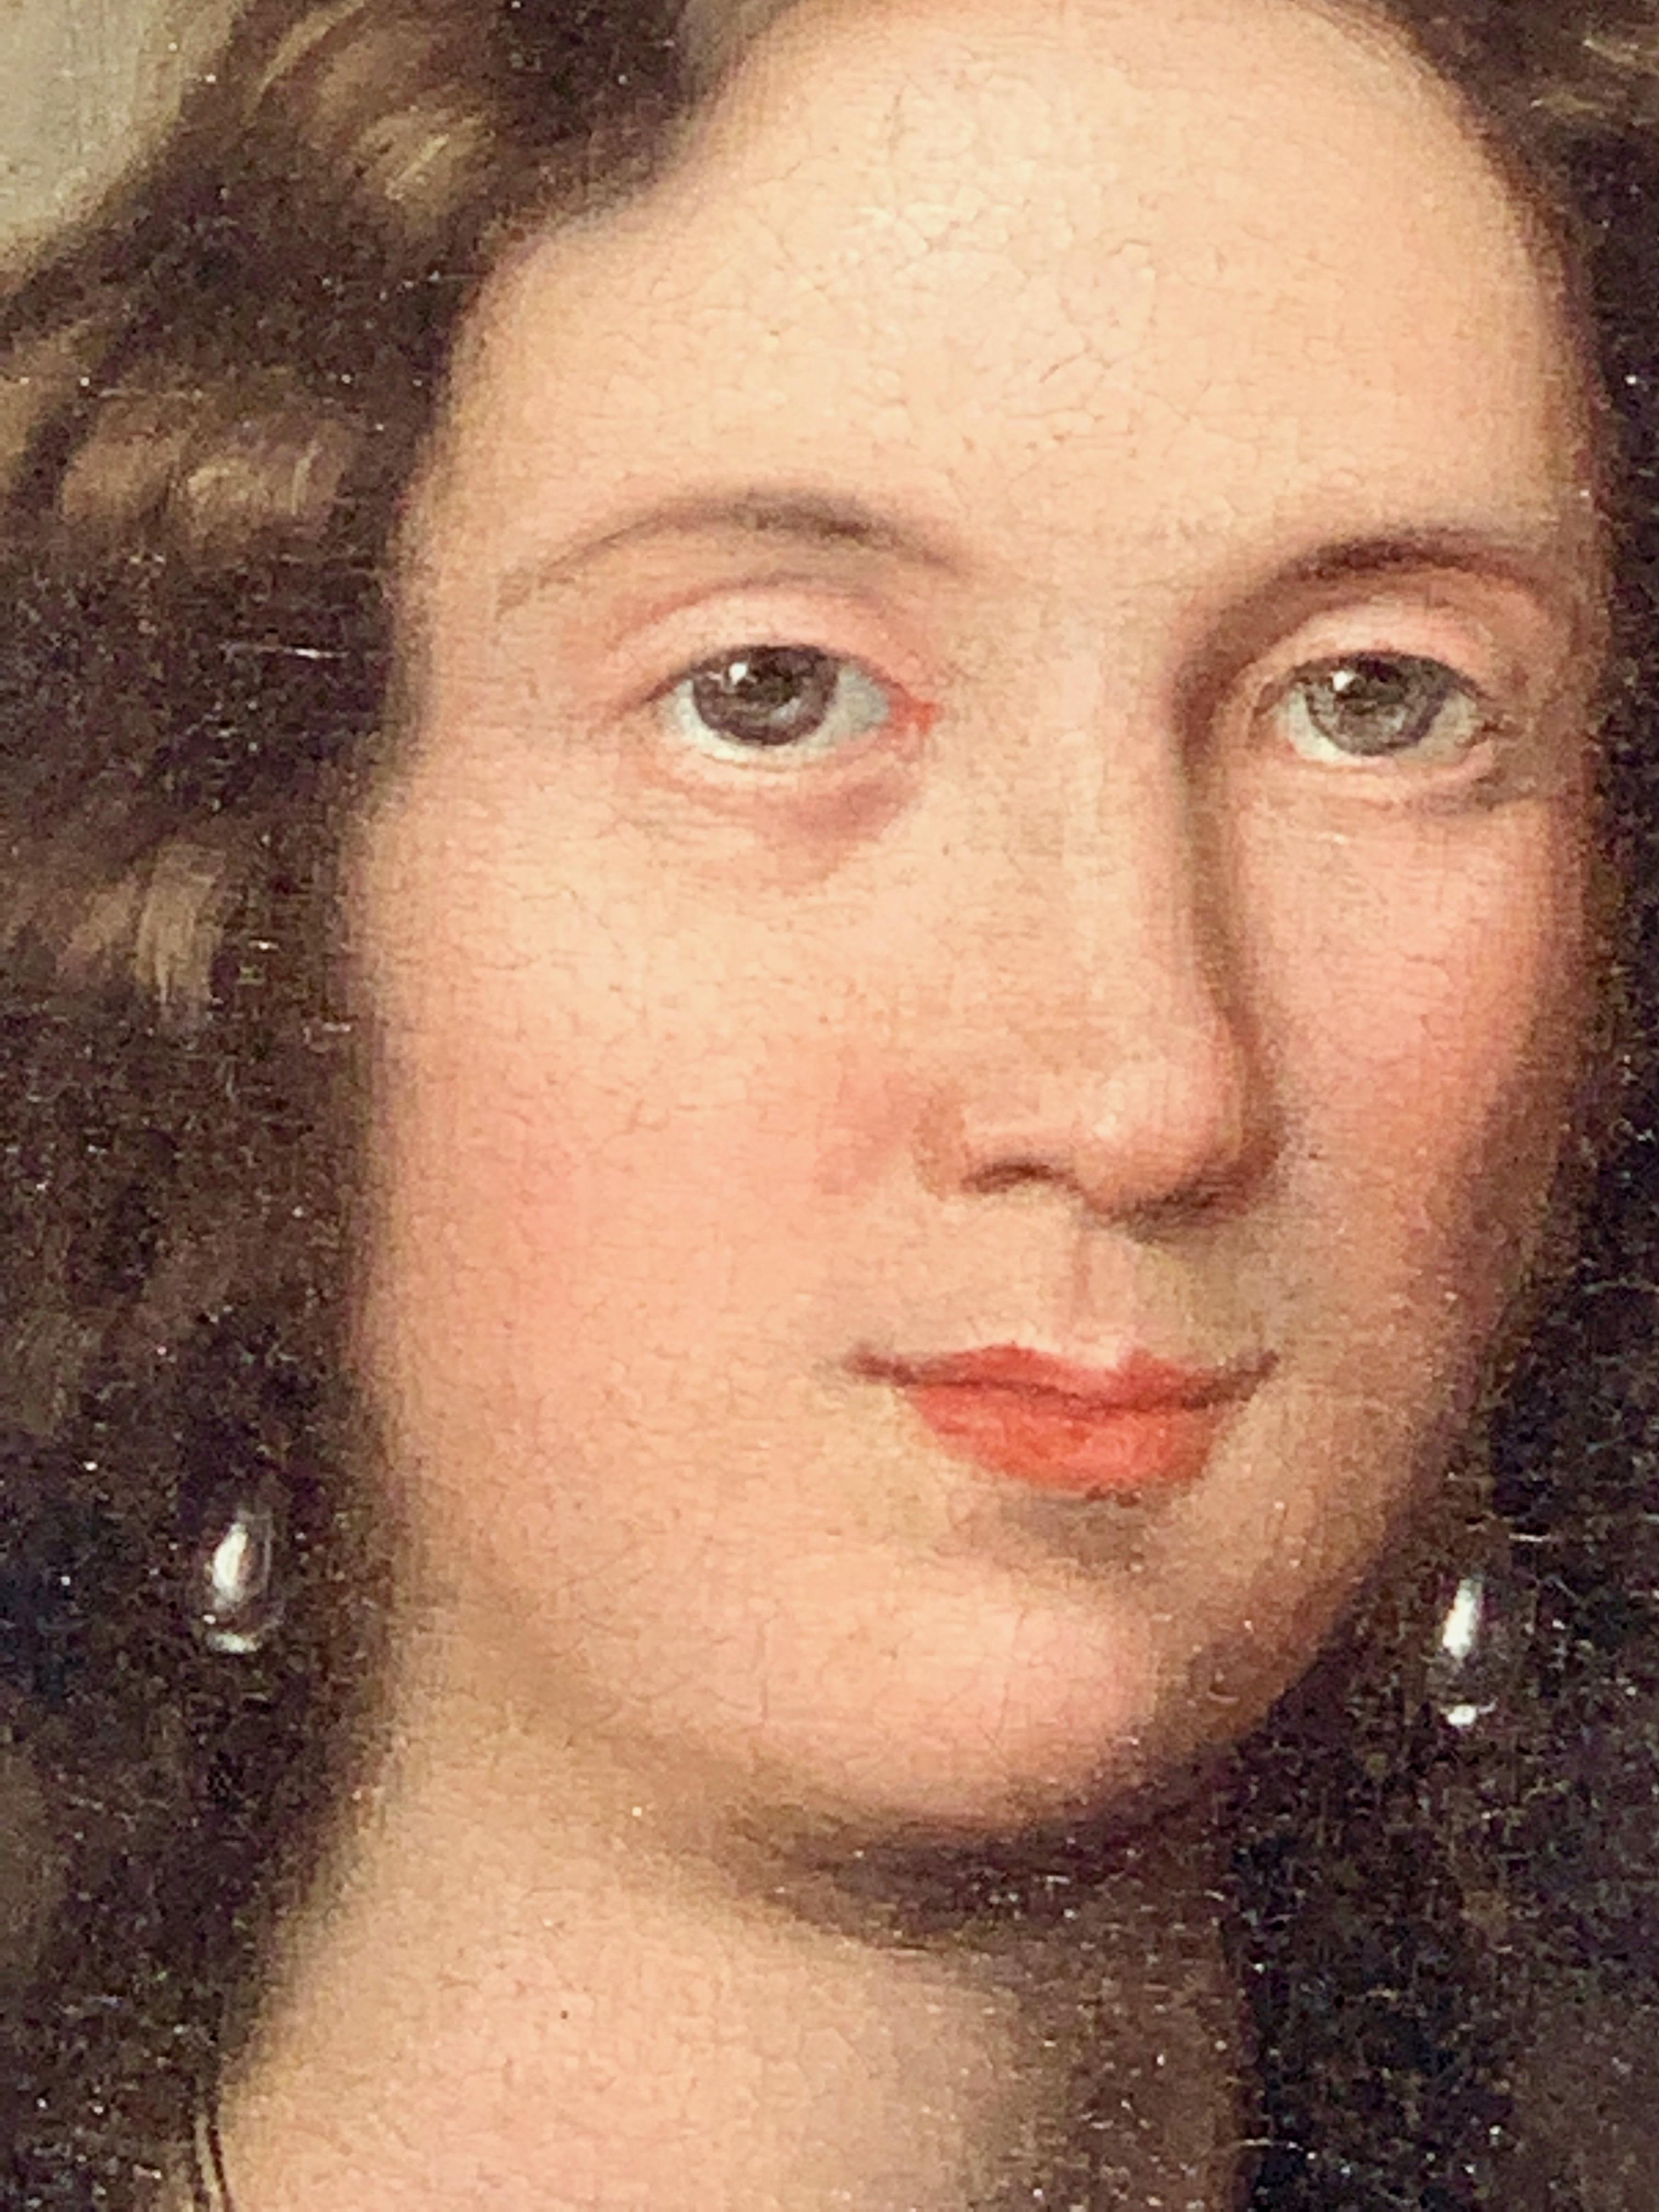 Wunderschönes Porträt eines jungen Mädchens aus dem 17. Jahrhundert. Fabelhafte Qualität und in hervorragendem Zustand. Das Stück stammt aus einer Privatsammlung in Connecticut und wurde in Großbritannien gereinigt und restauriert.

Das Gemälde hat